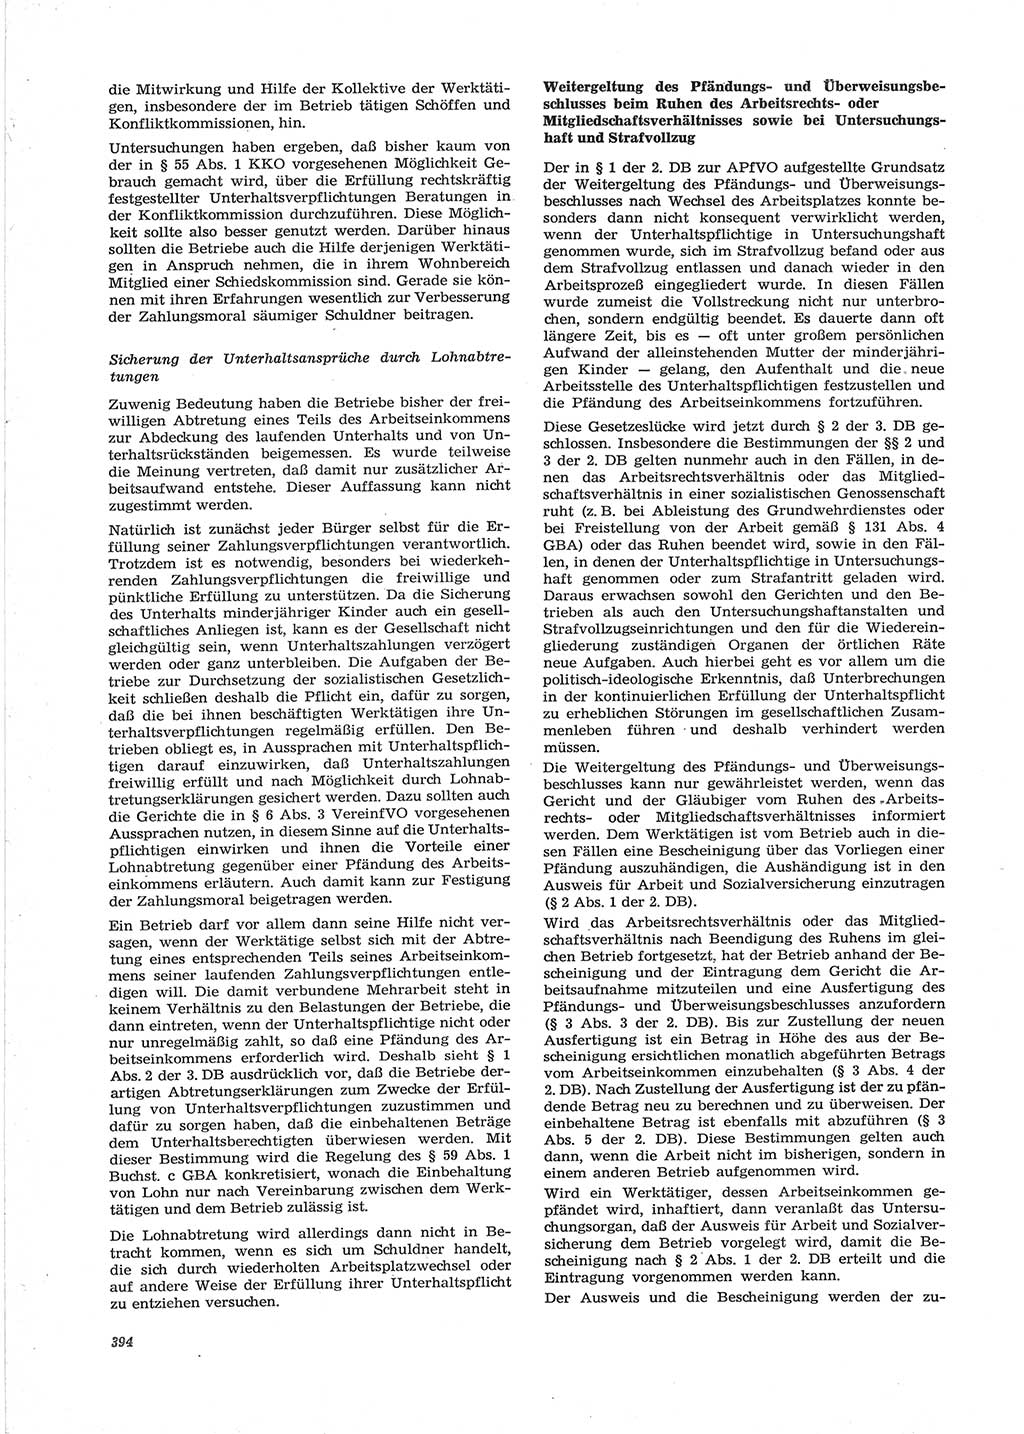 Neue Justiz (NJ), Zeitschrift für Recht und Rechtswissenschaft [Deutsche Demokratische Republik (DDR)], 28. Jahrgang 1974, Seite 394 (NJ DDR 1974, S. 394)